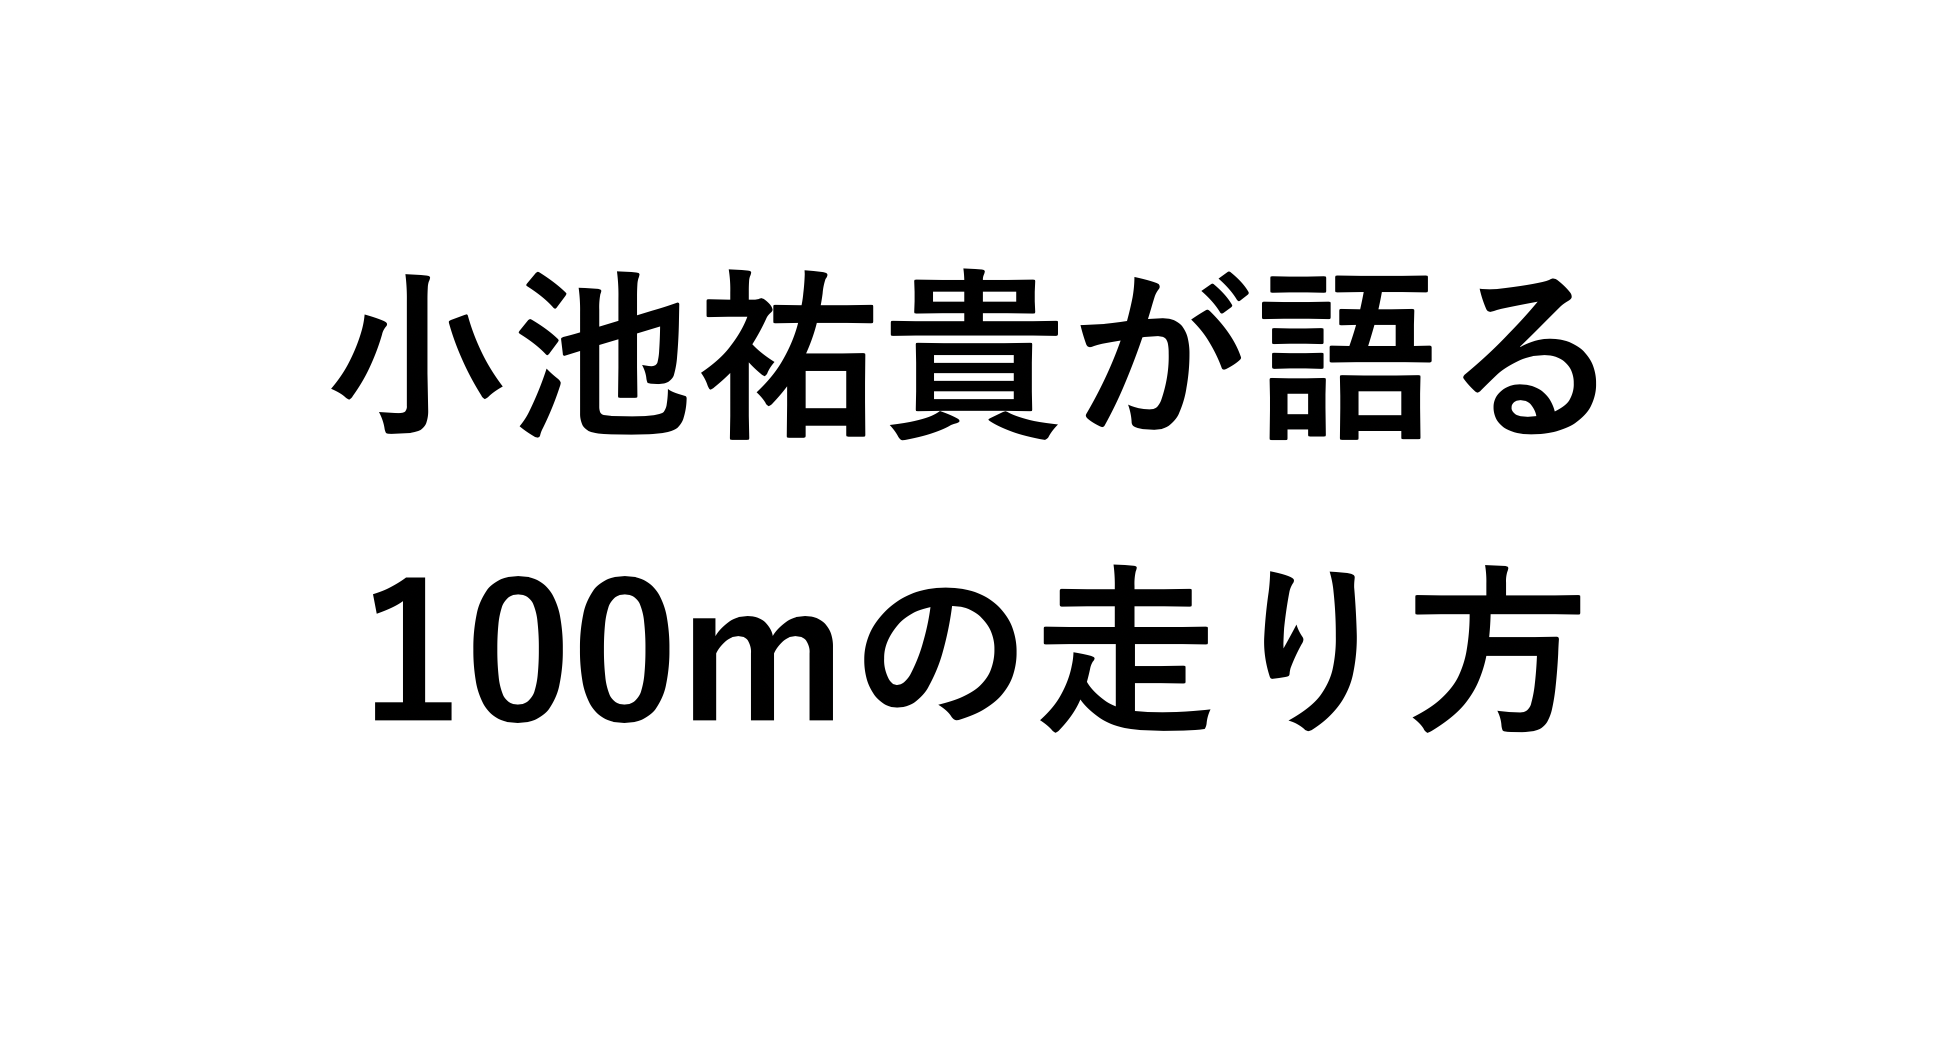 日本人3人目の9秒台スプリンター 小池祐貴が語る100mの走り方 Runspark ランスパーク